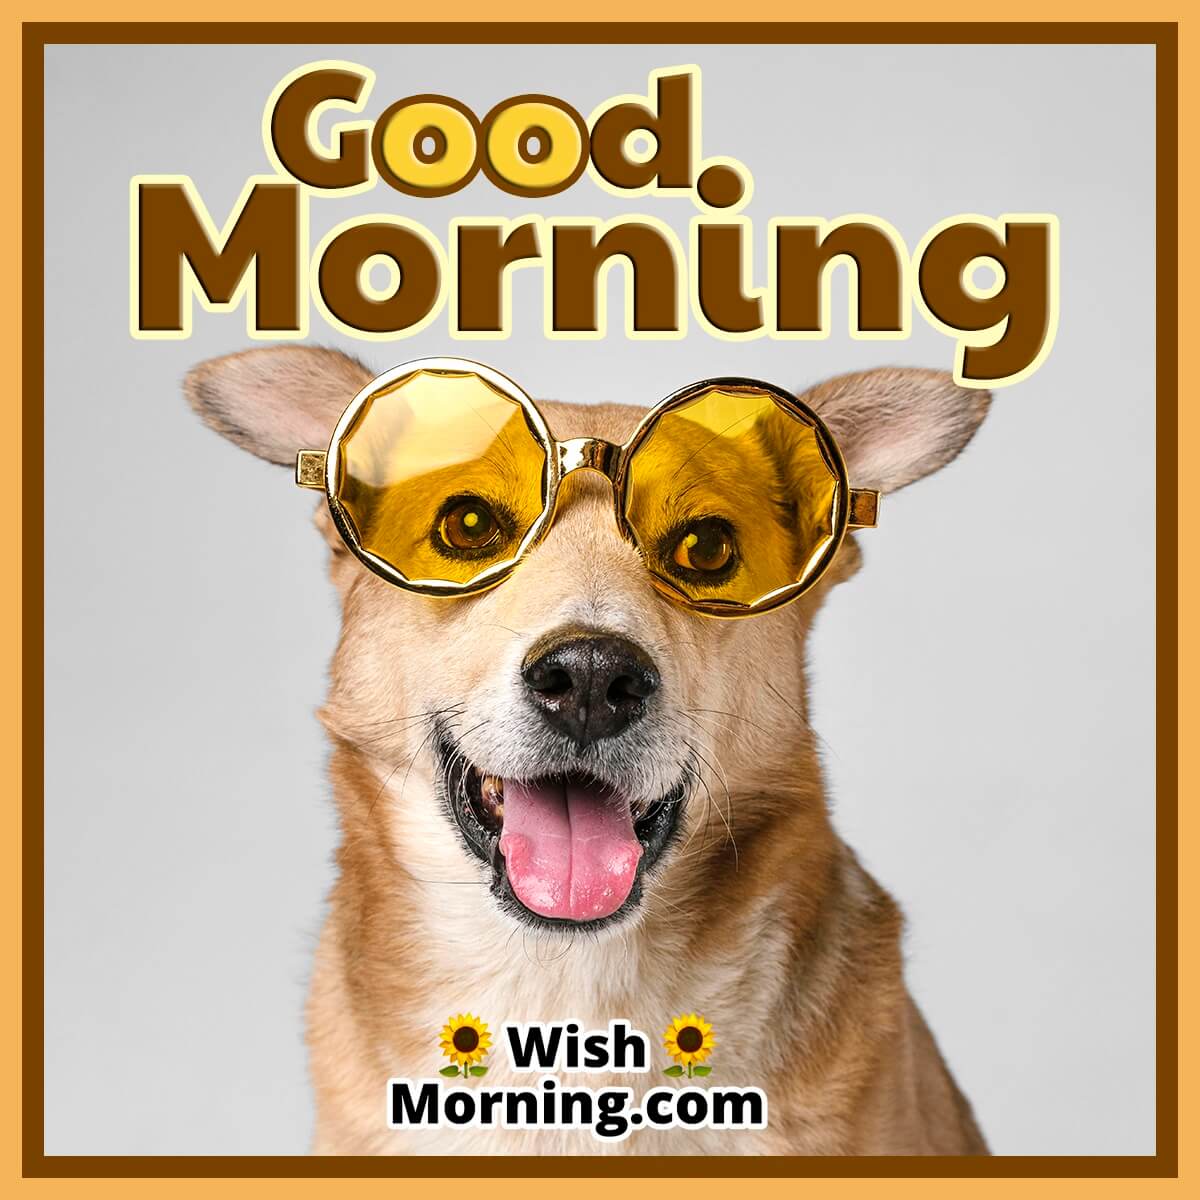 Good Morning – Funny Dog Image